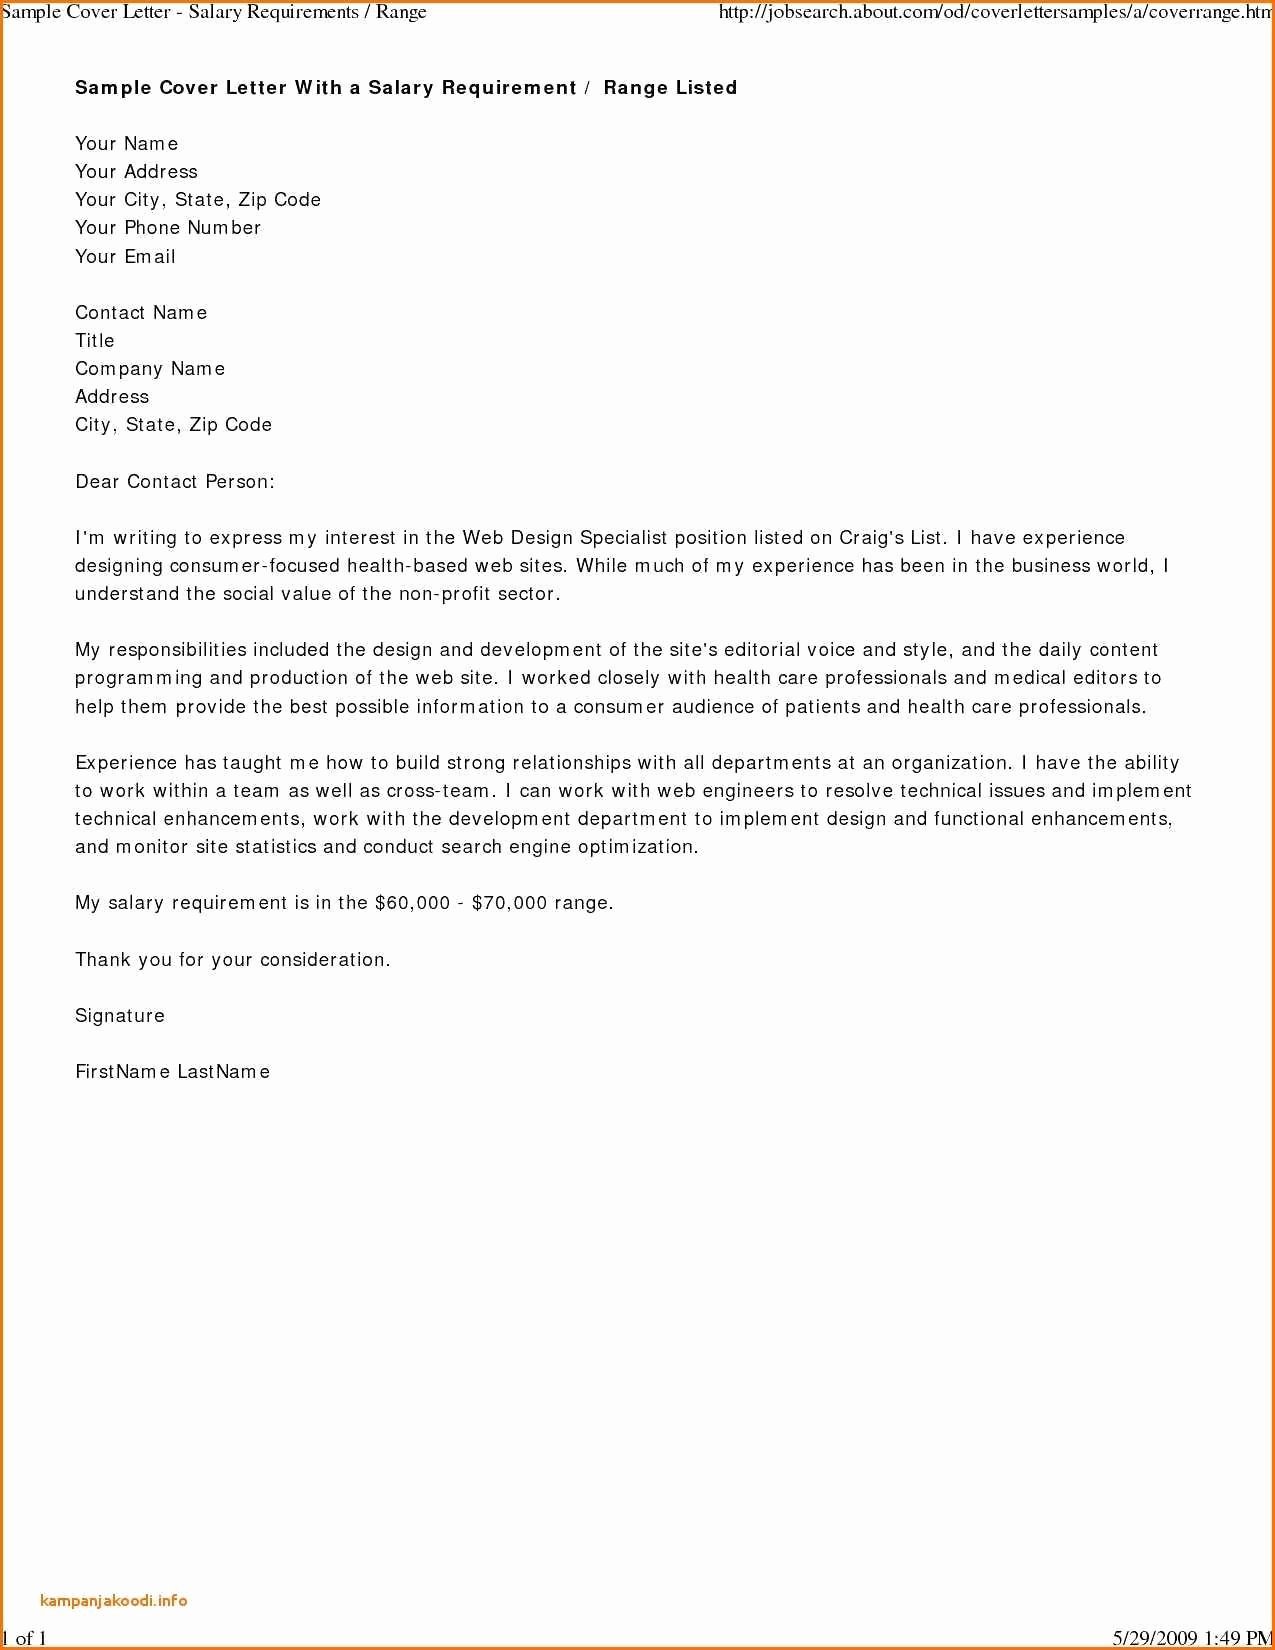 Business Letter format Purdue Owl Inspirational Mla Professional Letter format Valid Business Letter